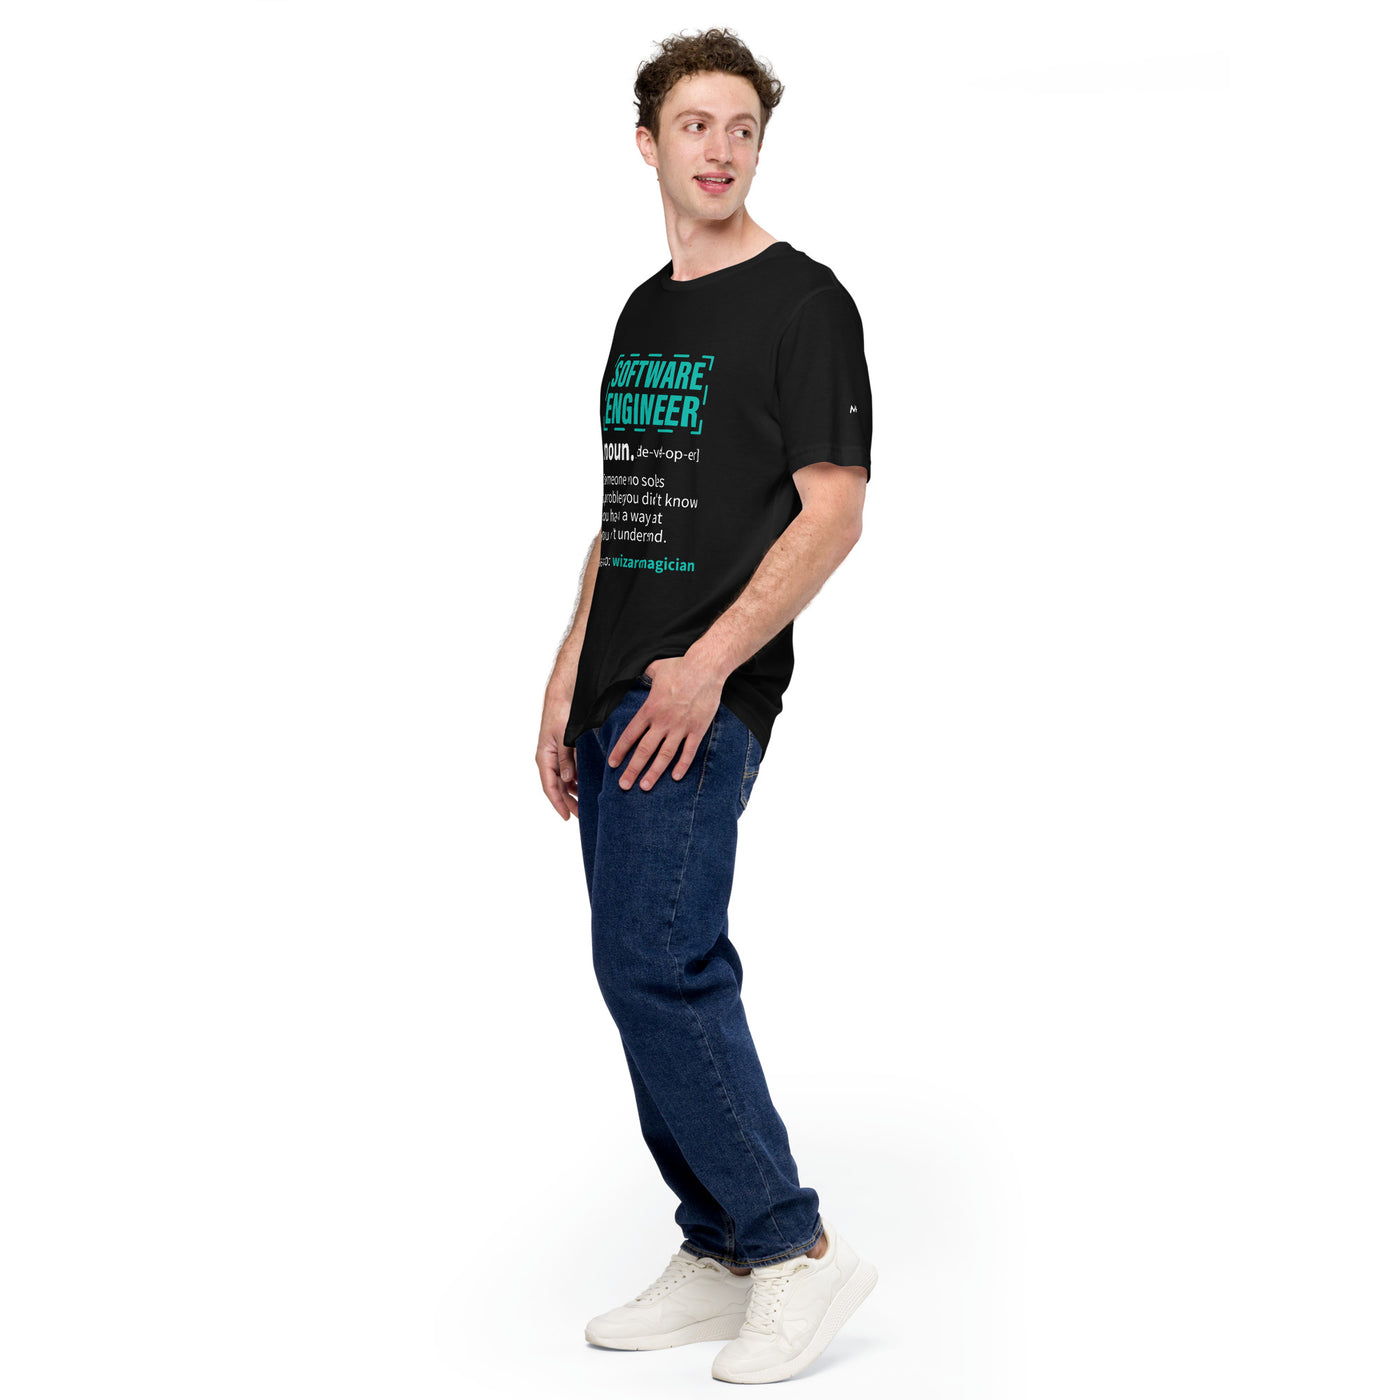 Software Engineer Def : Blue Unisex t-shirt